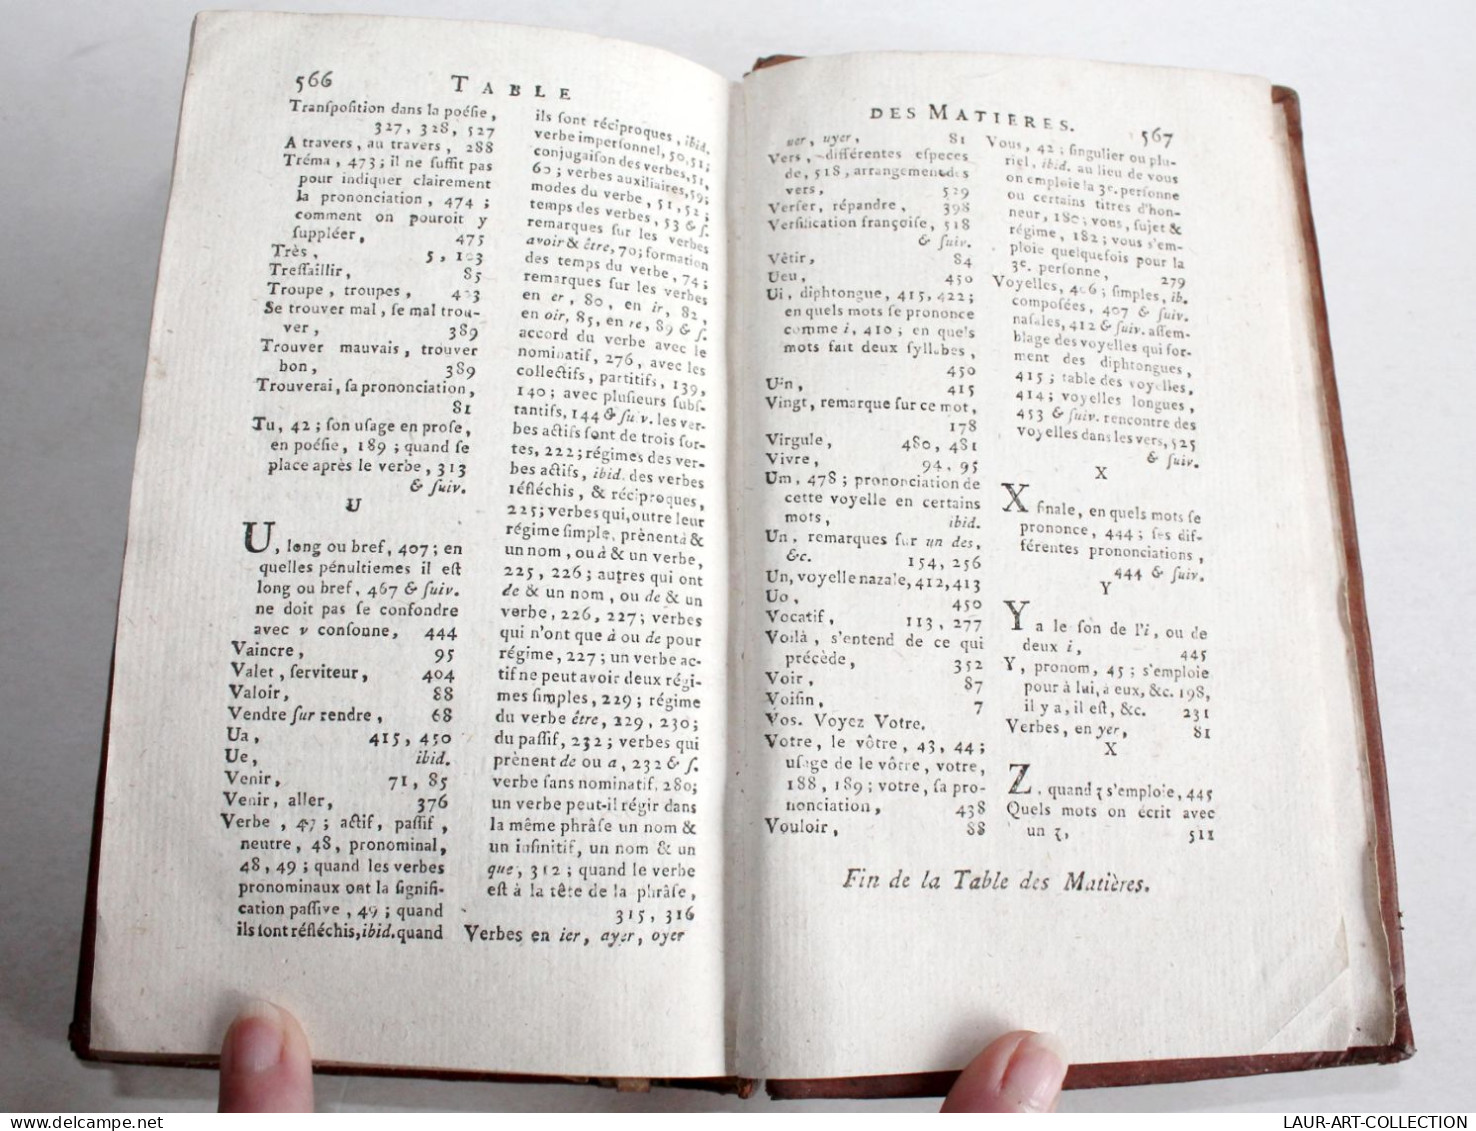 PRINCIPES GENERAUX ET PARTICULIERS DE LA LANGUE FRANCAISE, DE WAILLY 1786 BARBOU / ANCIEN LIVRE XVIIIe SIECLE (2204.50)